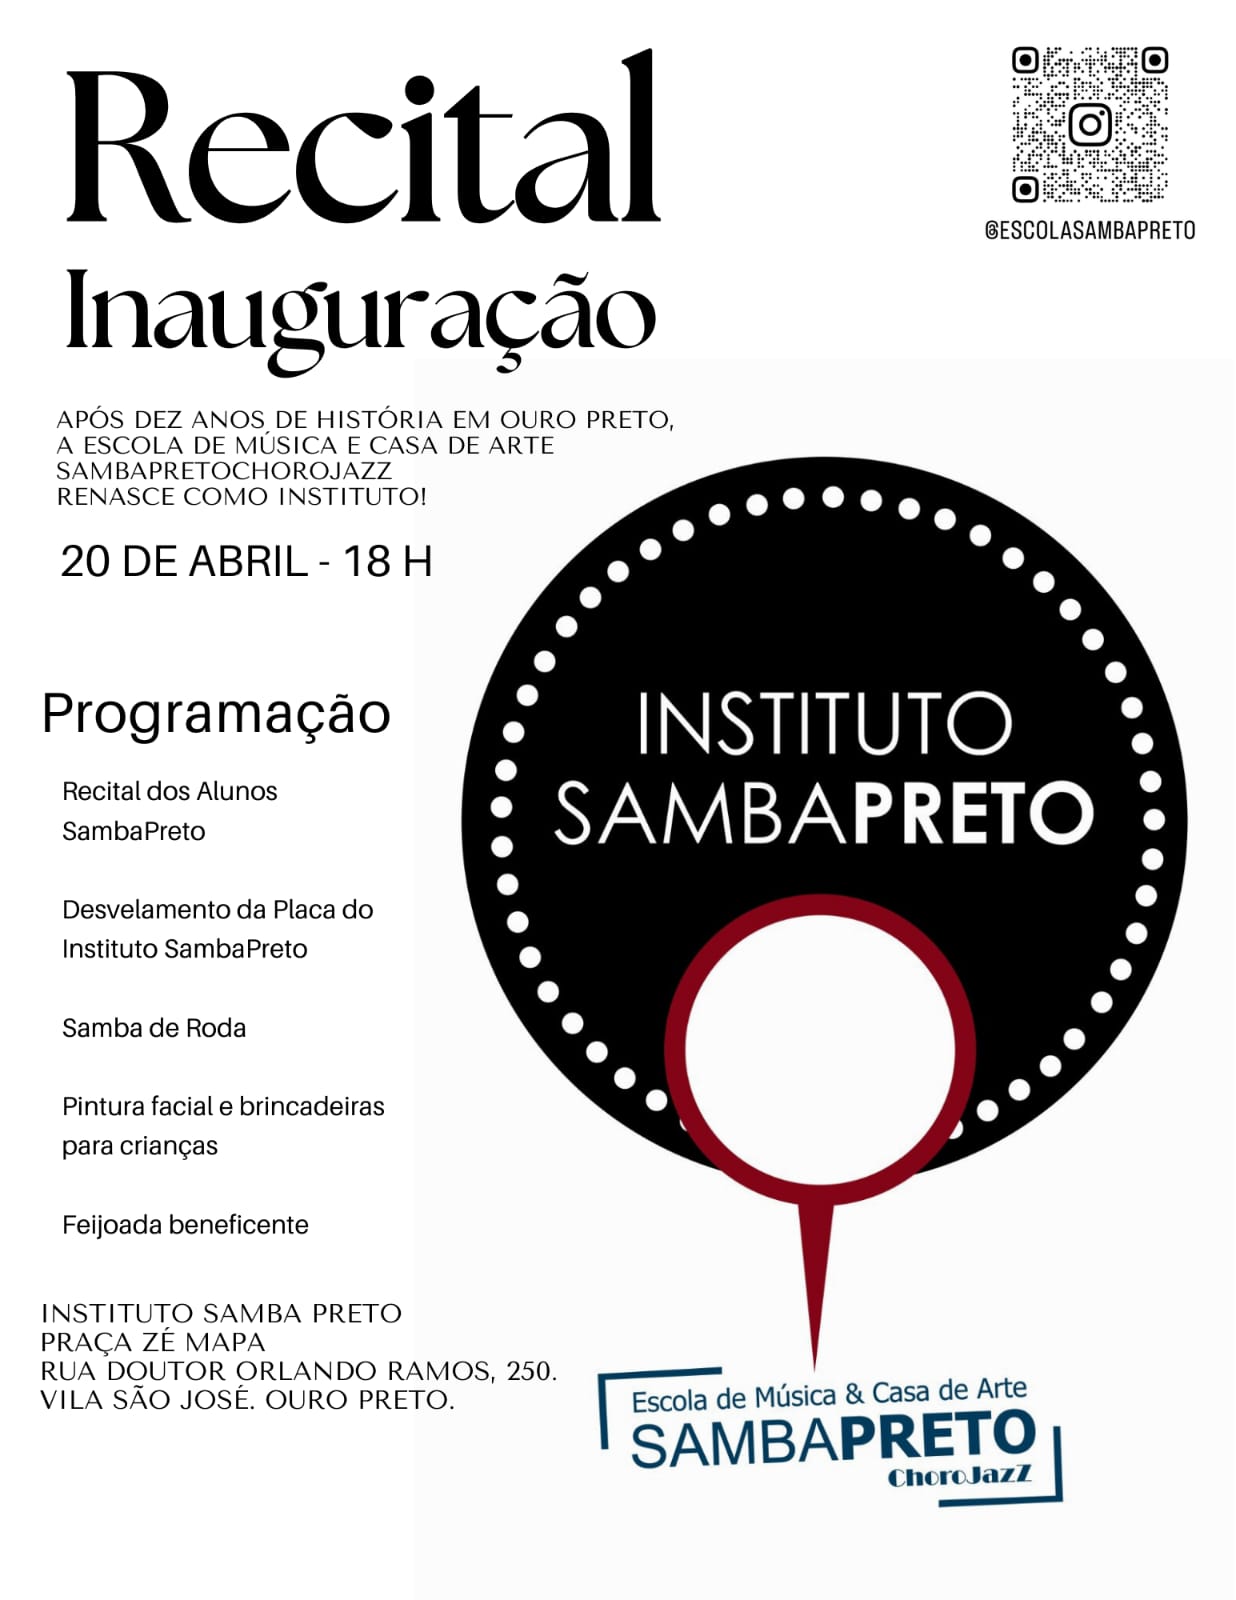 Recital de inauguração do instituto Samba Preto acontece hoje (20) em Ouro Preto